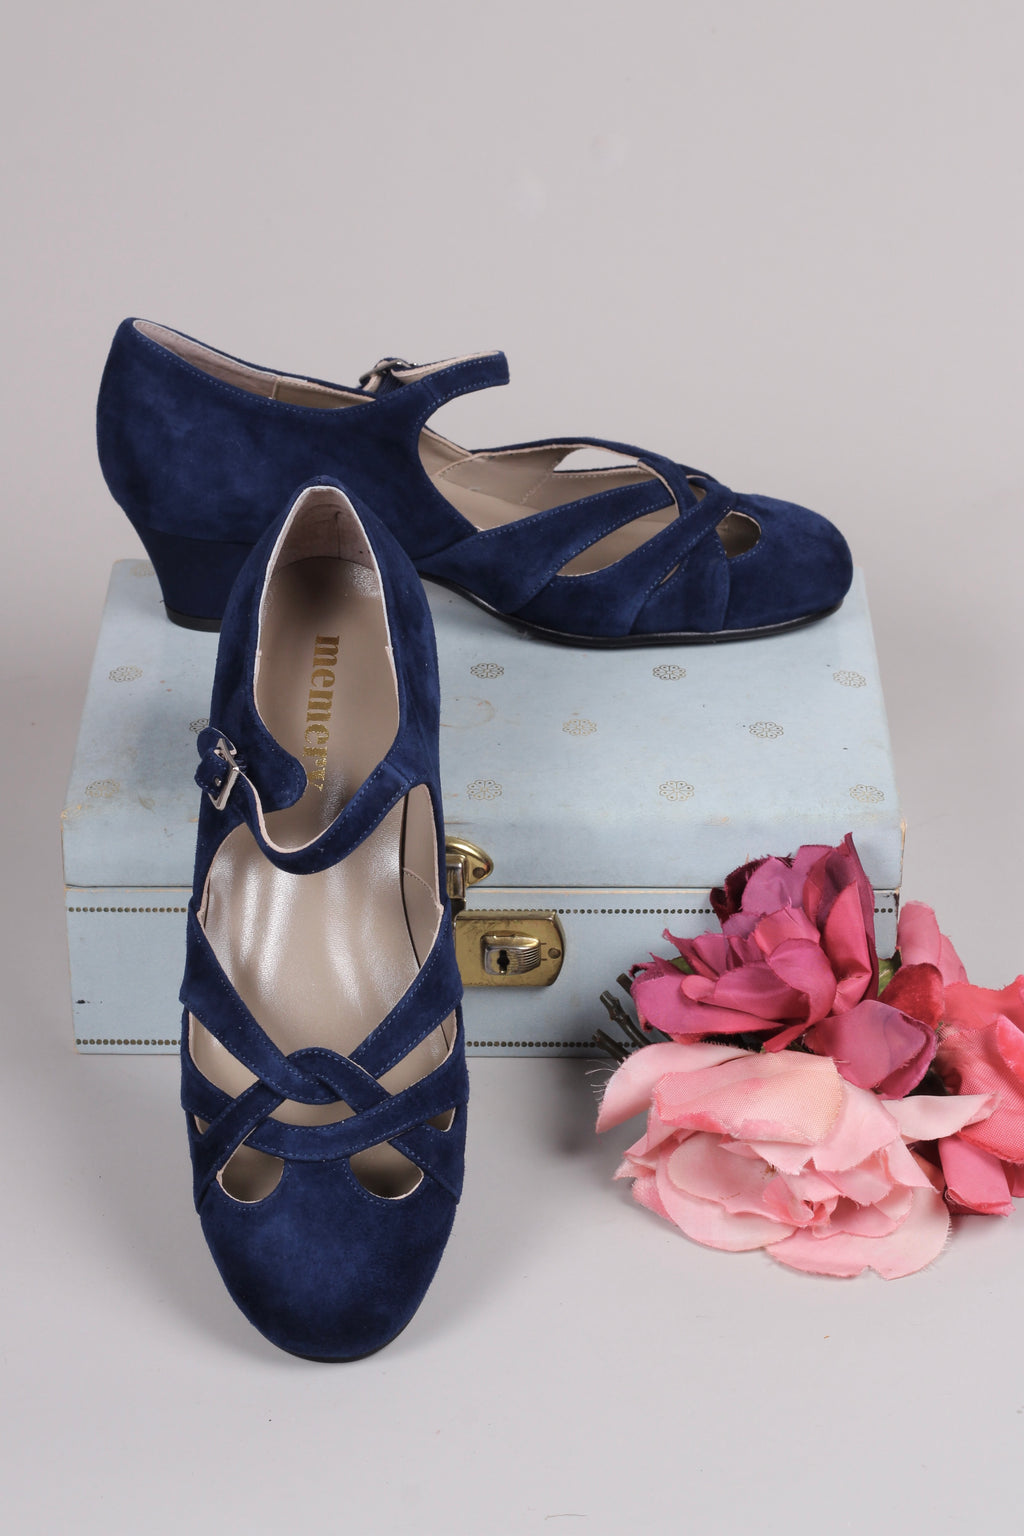 1930'er / 1940'er vintage style sandaler i ruskind - Navy blå - Ida